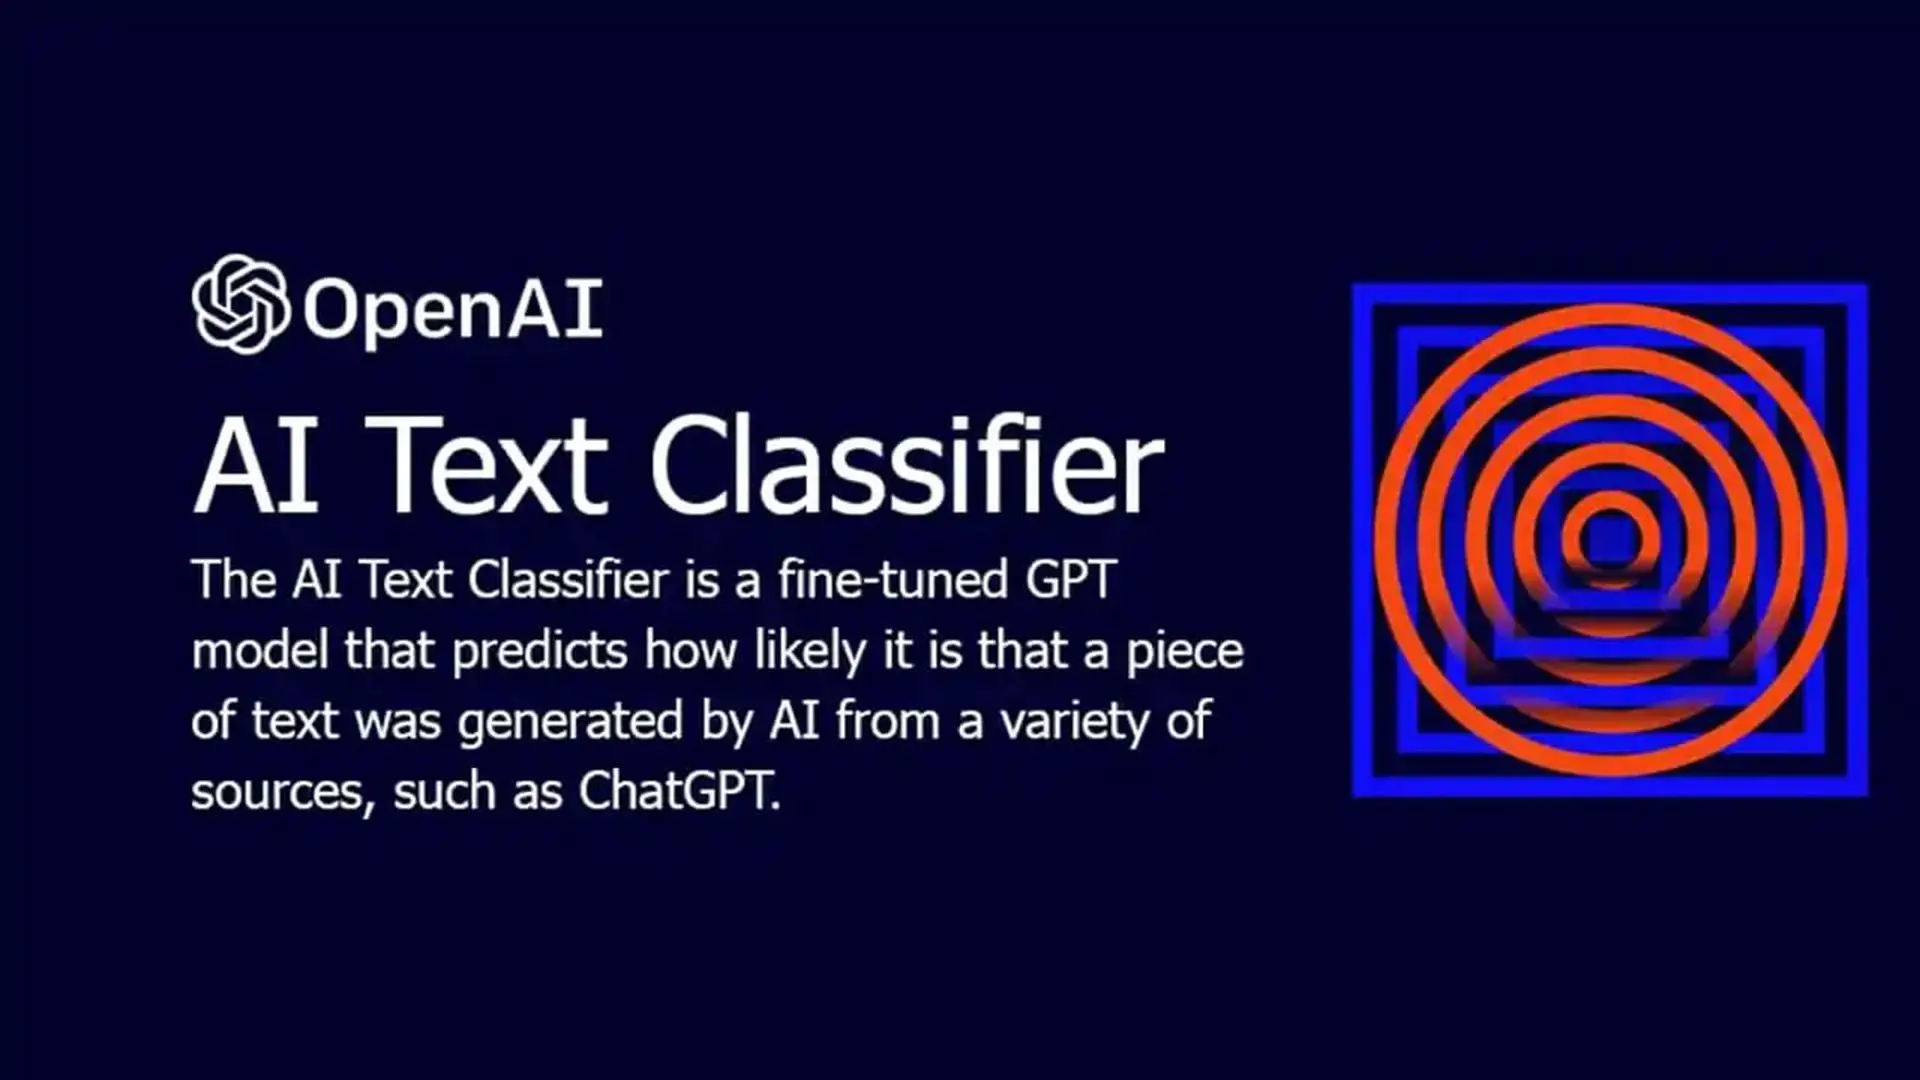 OpenAI ra mắt AI Text Classifier: Công cụ xác định đoạn văn do người hay AI viết